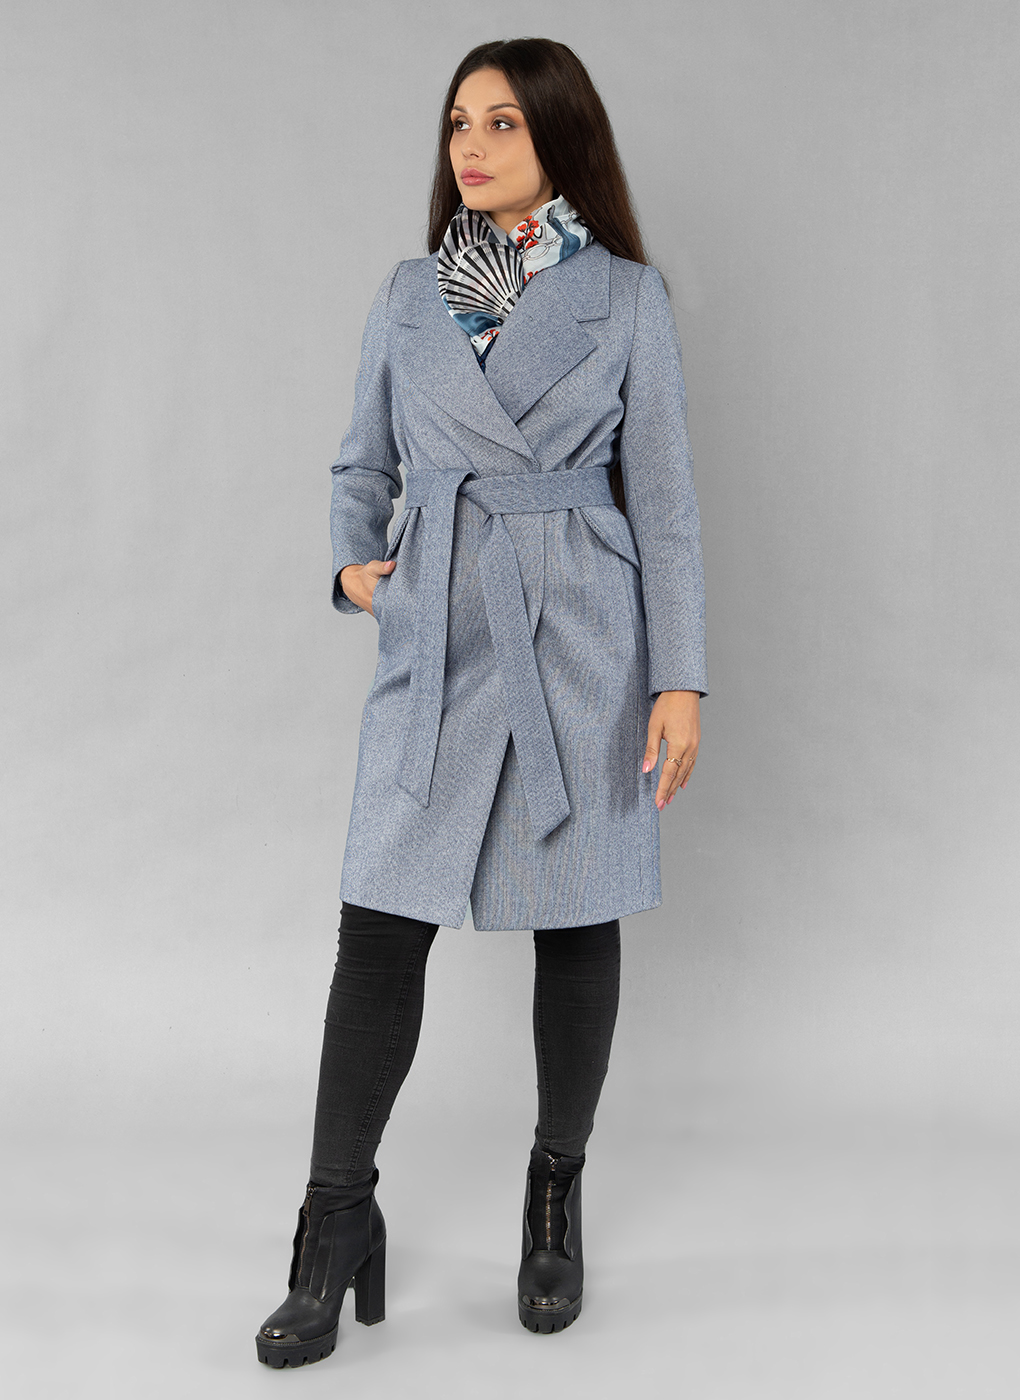 Пальто женское Sezalto 55023 синее 46 RU